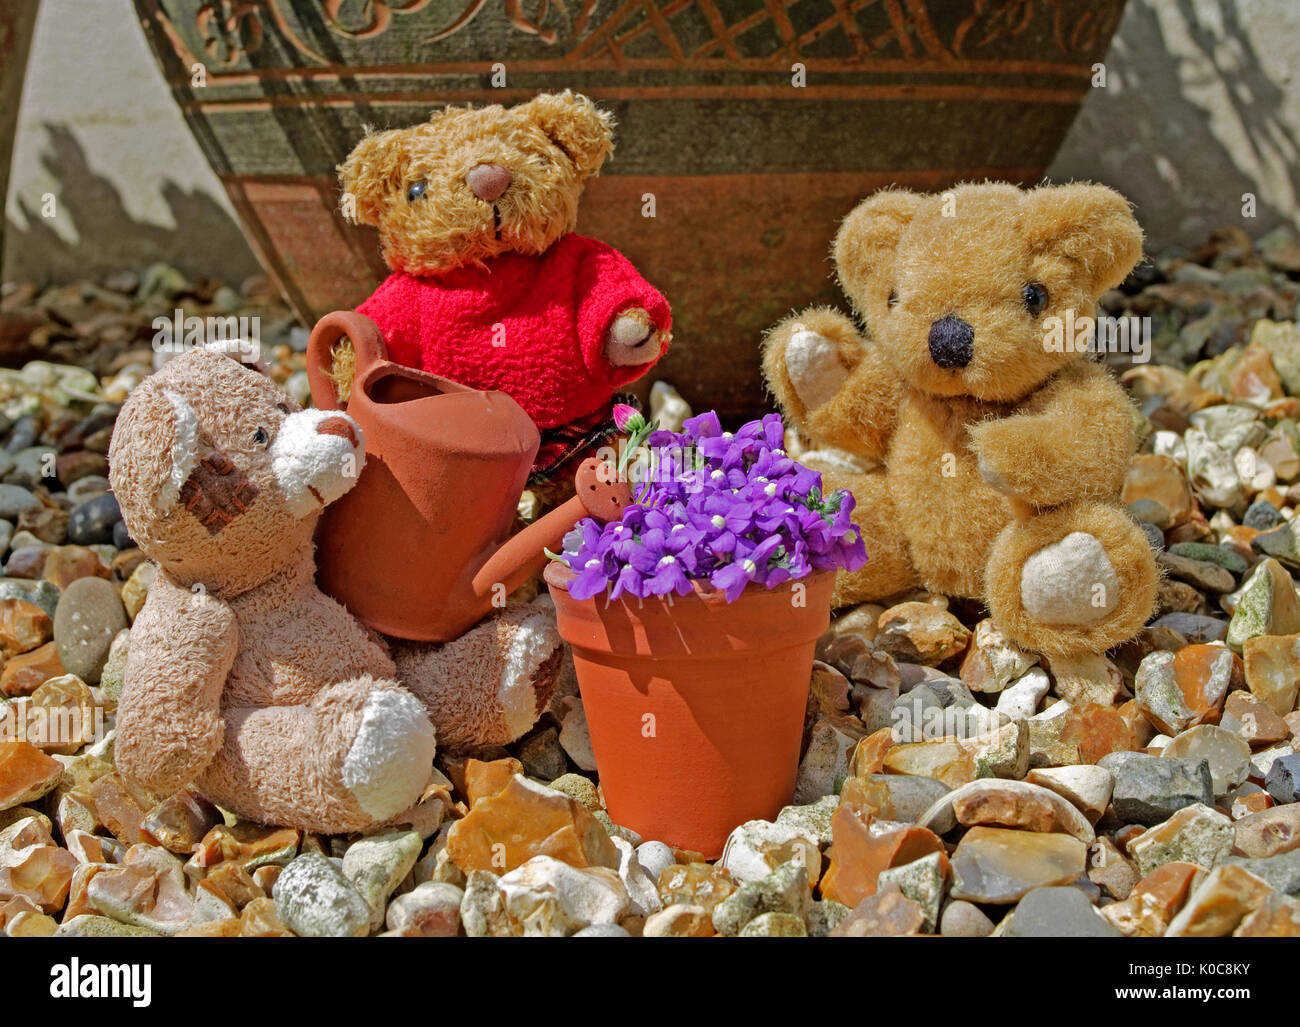 Tableau von Miniatur Teddybären in Garten im Sommer Sonnenschein mit Miniatur Ton Gießkanne und Flower Pot. Stockfoto